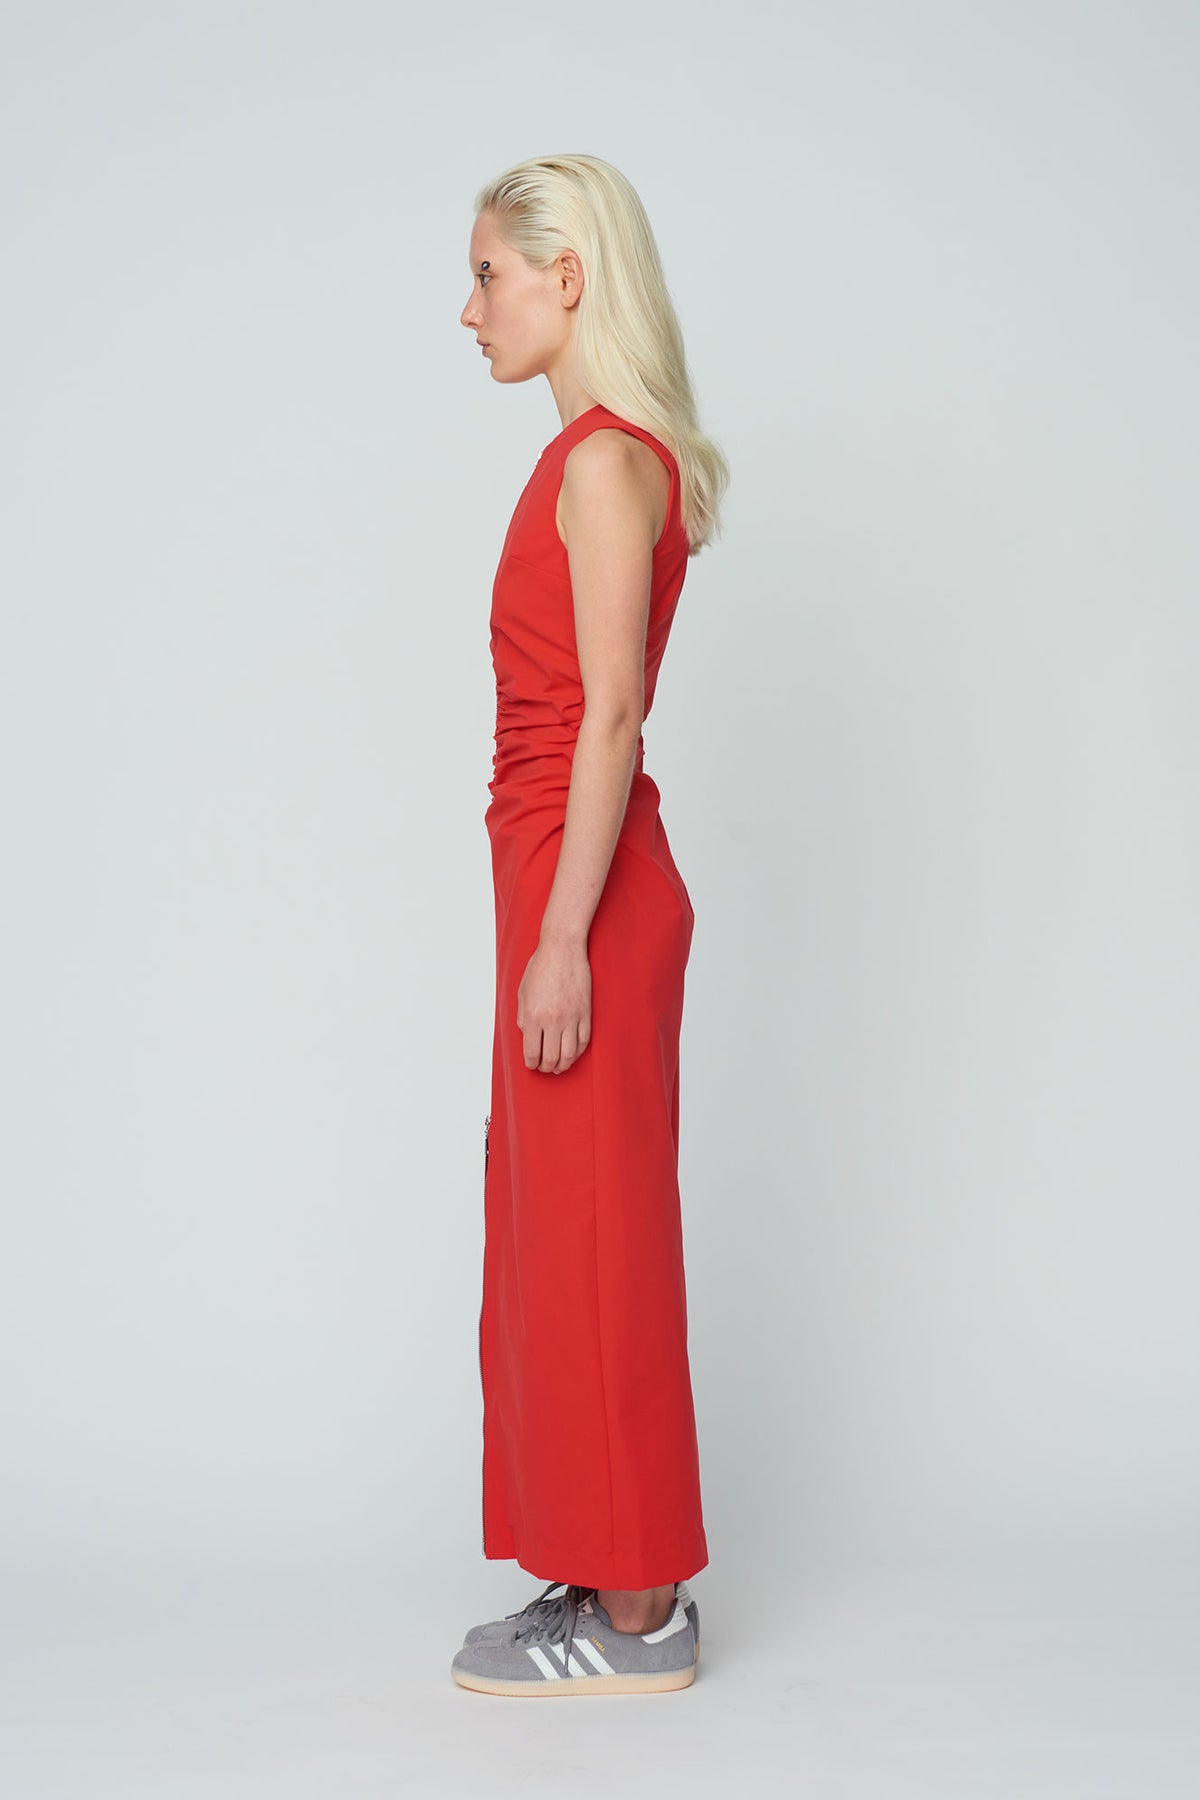 Wynn Hamlyn Zipper Sleeveless Dress // Scarlet